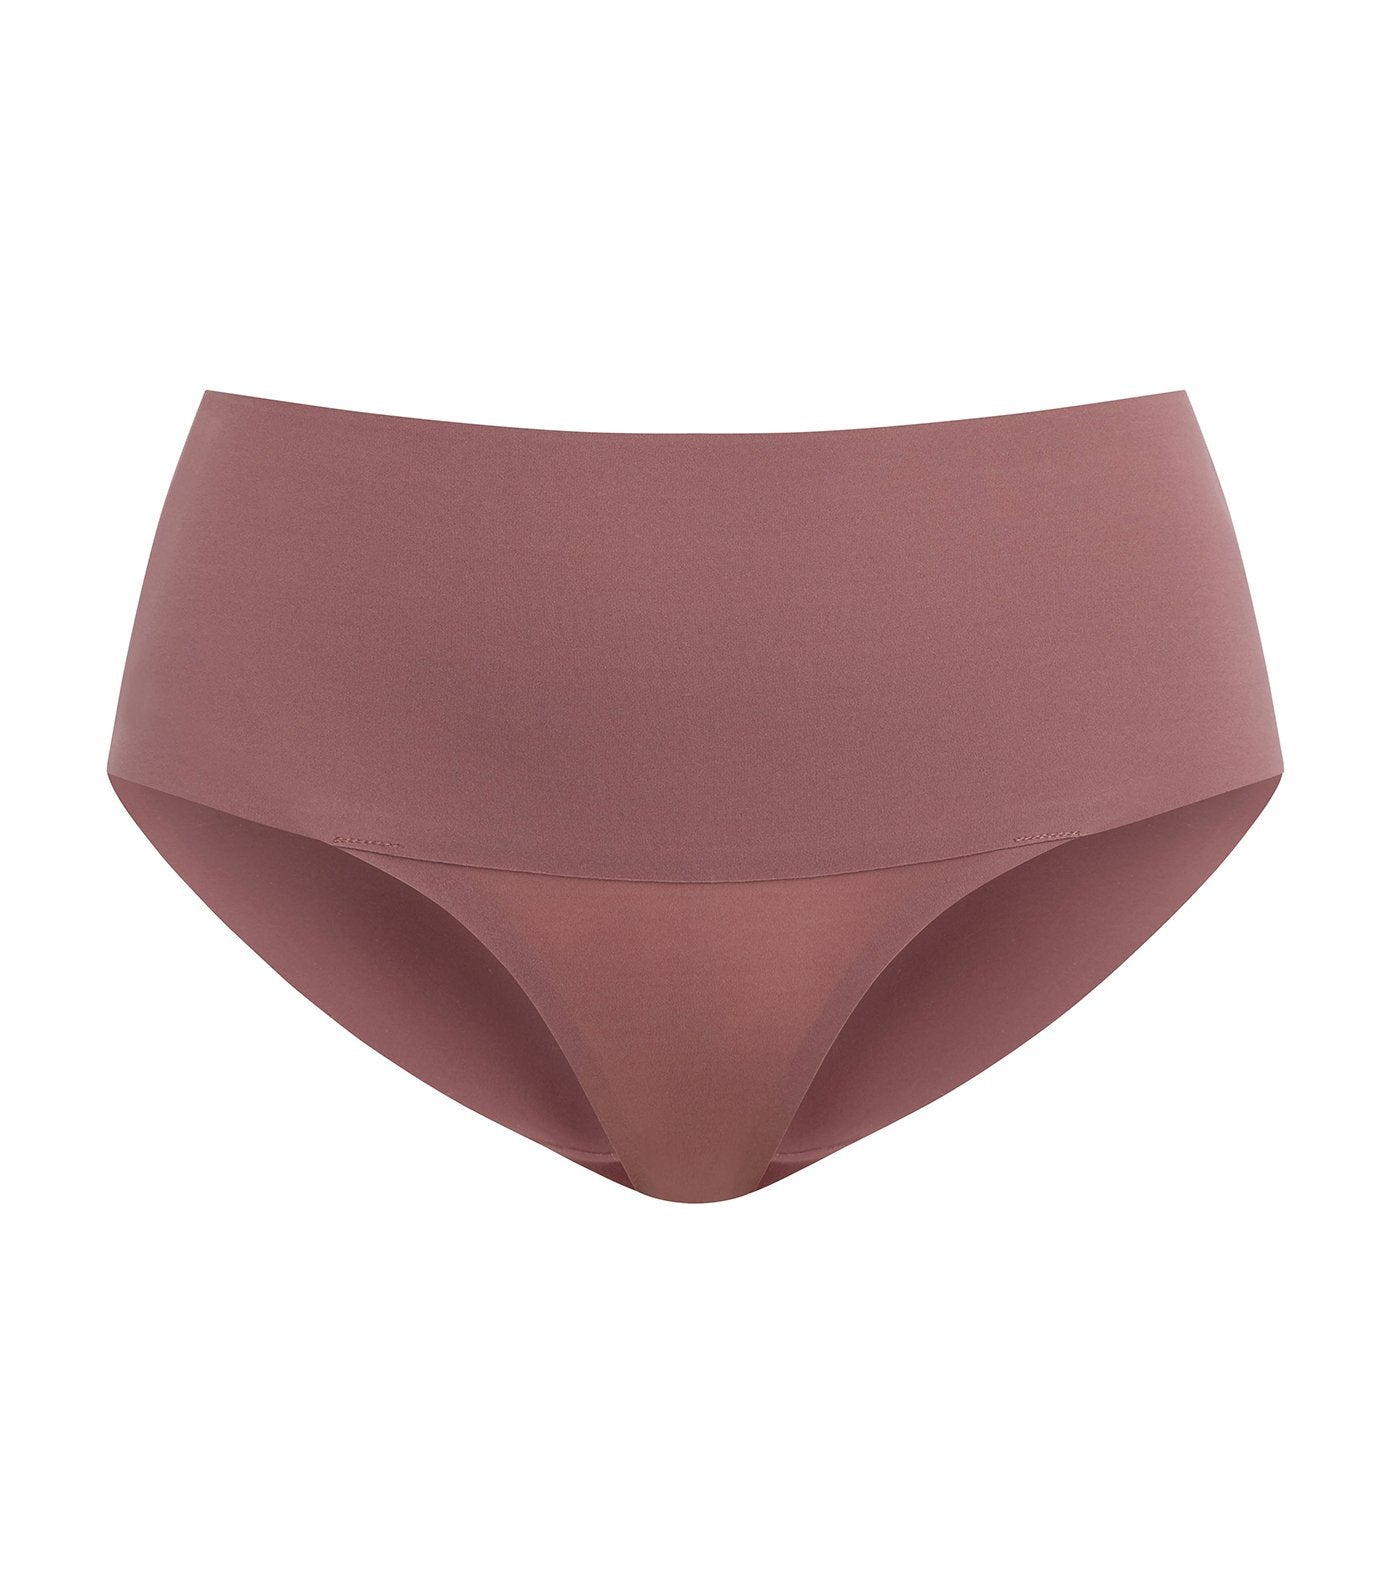  Panties For Women Undie-tectable Brief Violet Umber XS